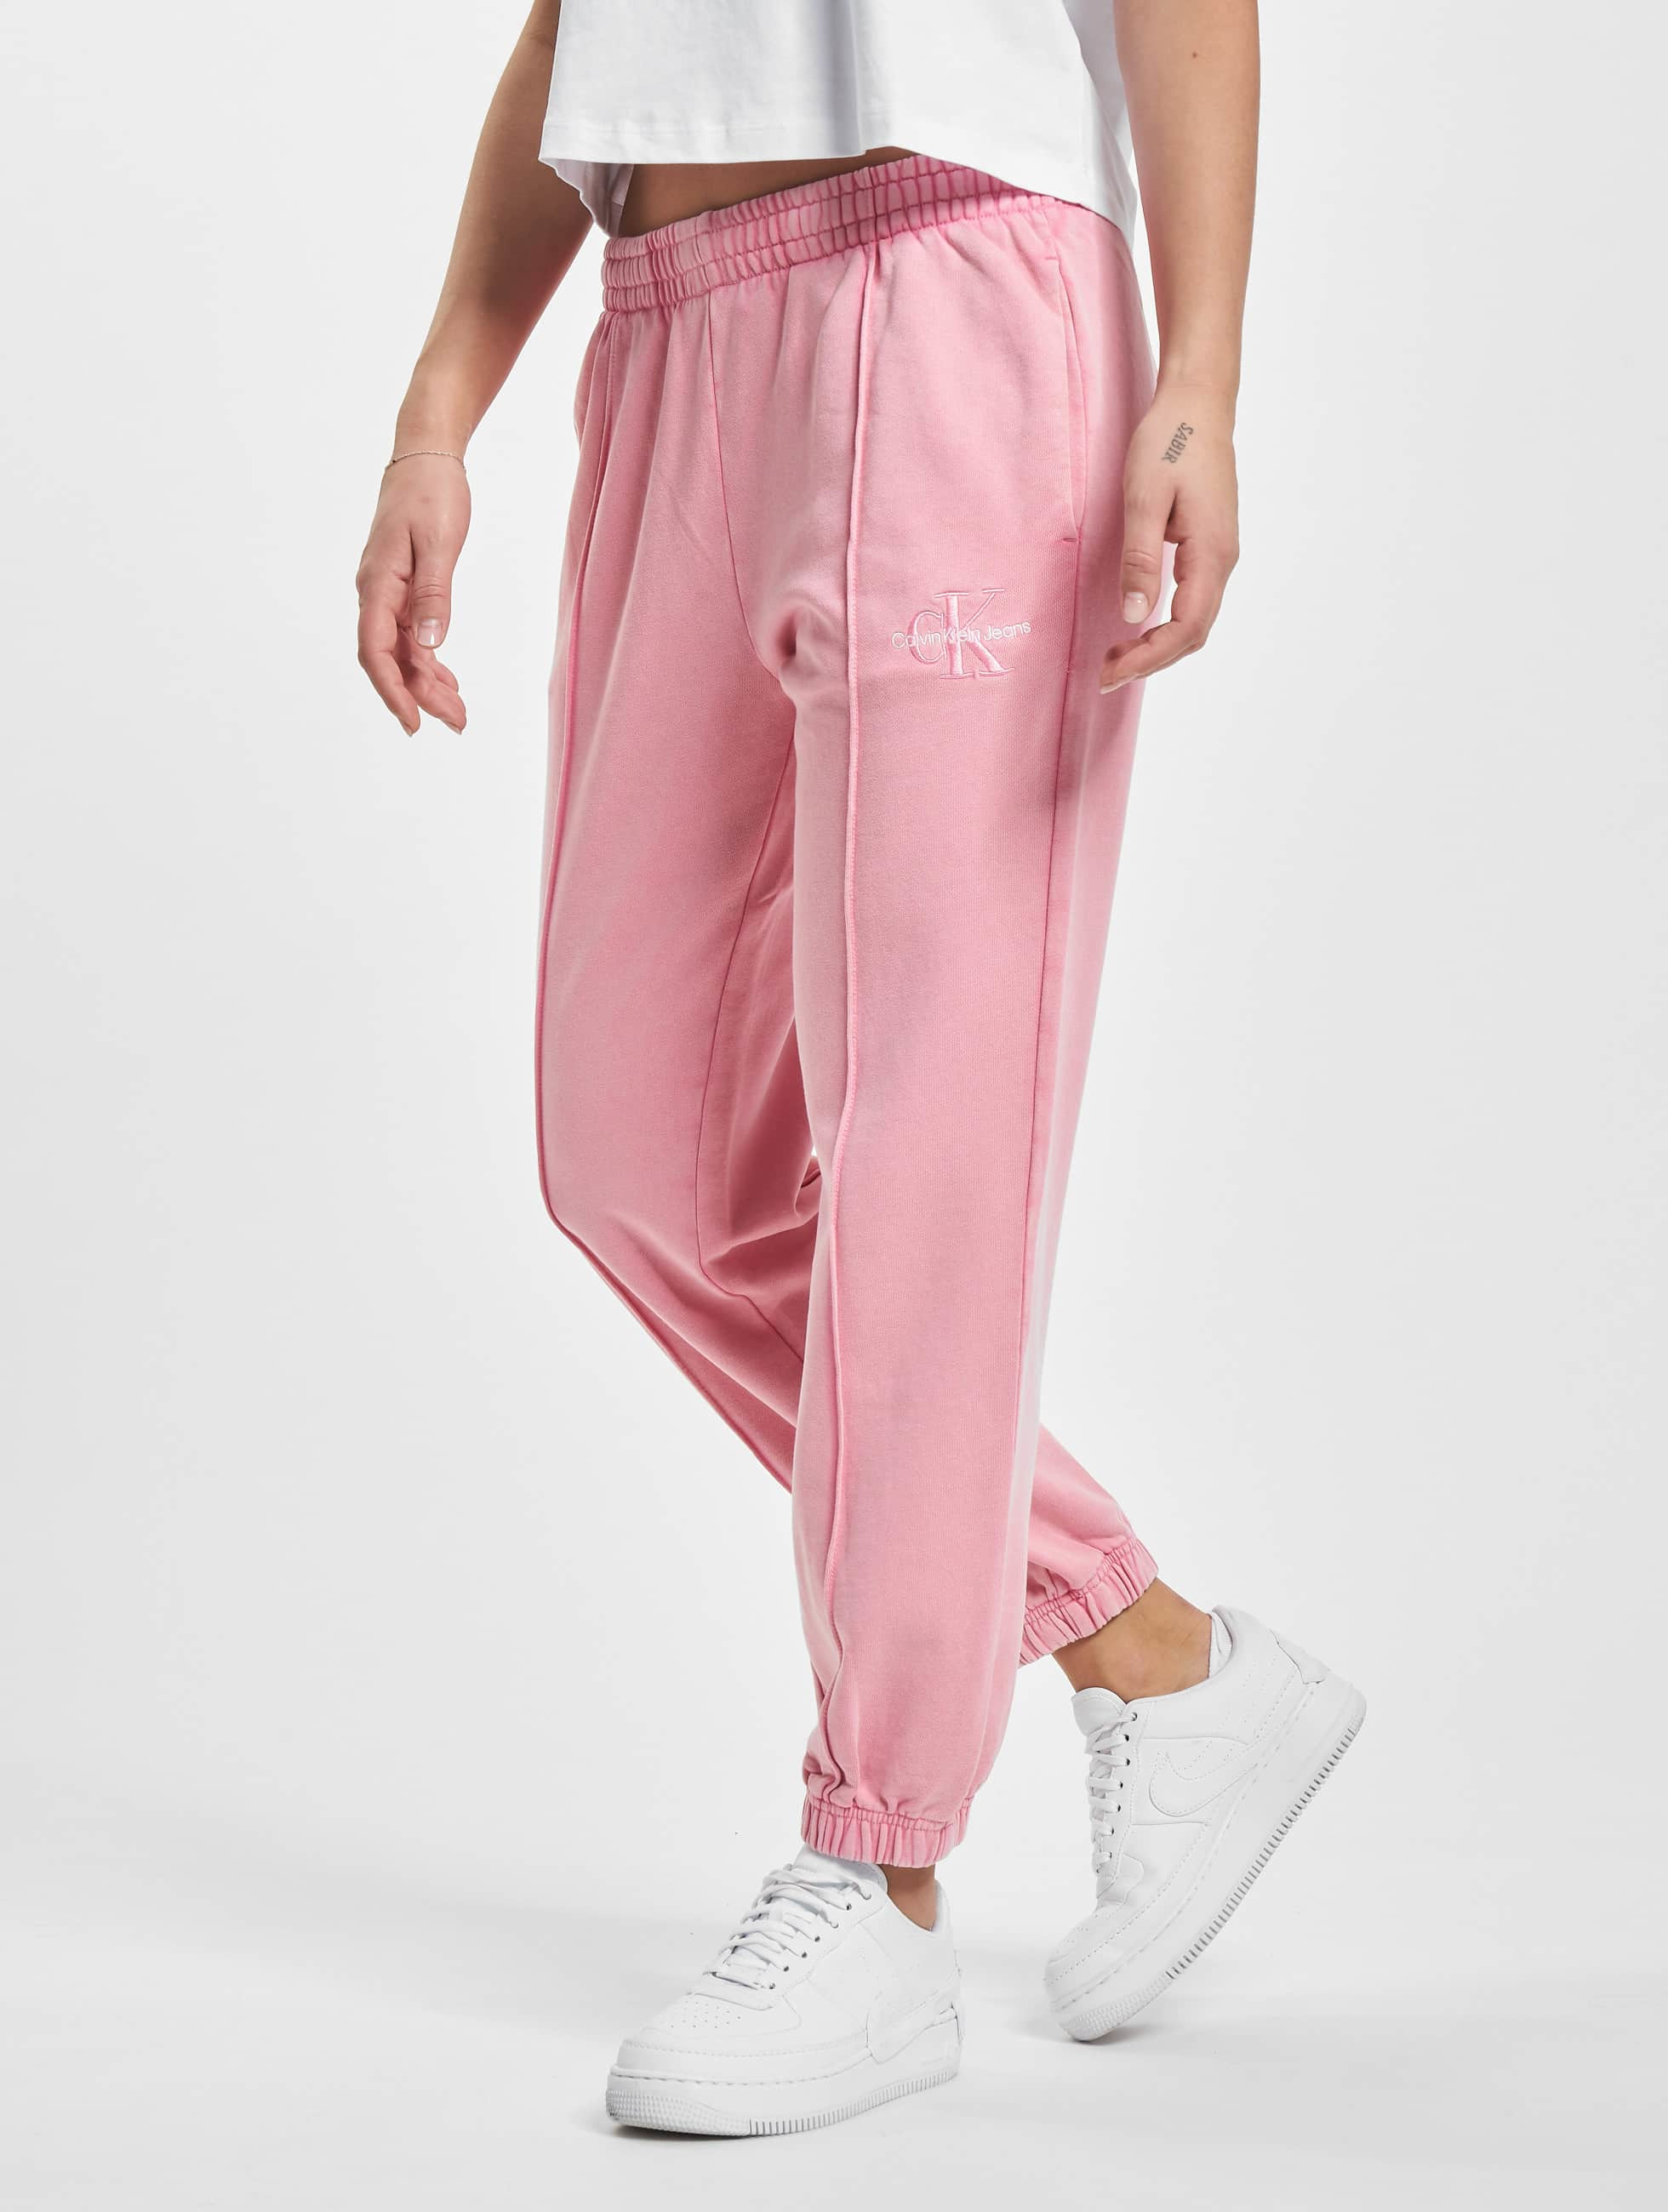 Calvin Klein Pant / Sweat Pant Monogram Logo in pink 970877